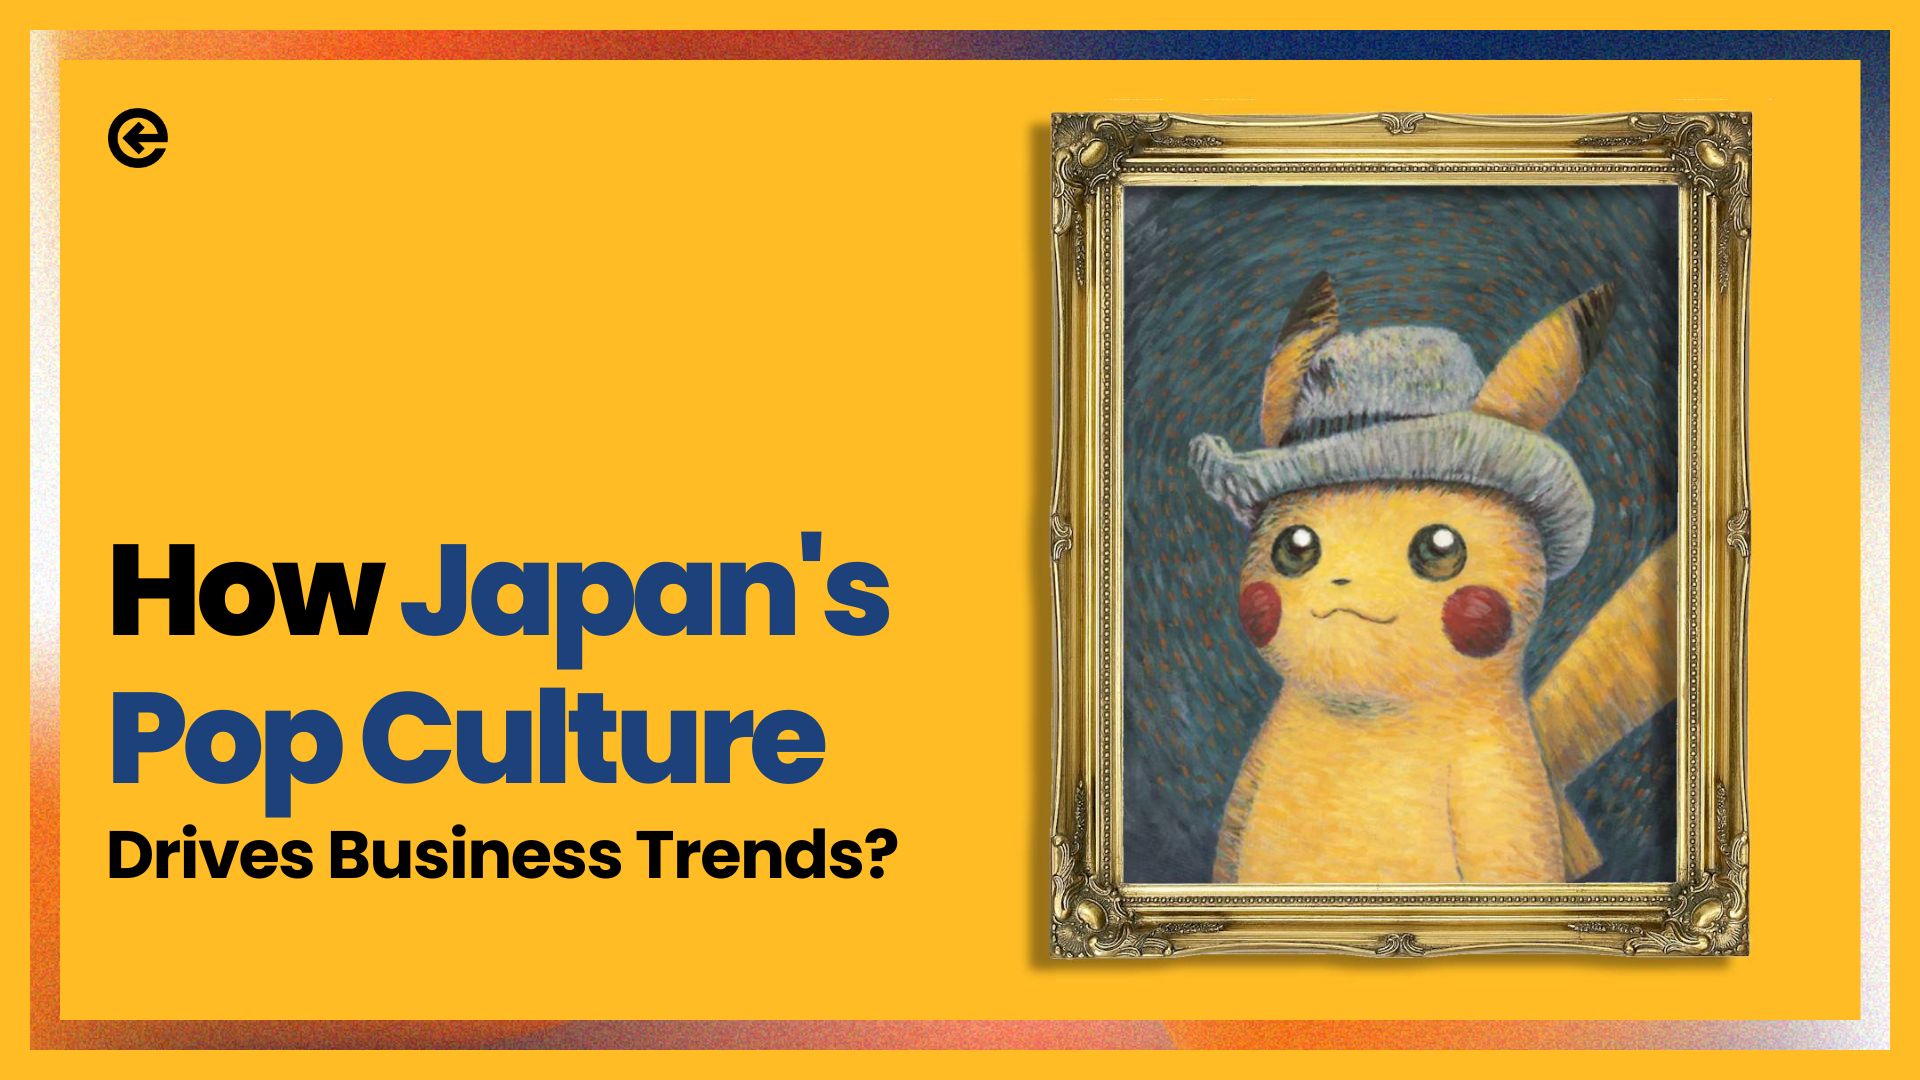 जापान की पॉप संस्कृति व्यापार के रुझान ों को कैसे चलाती है?